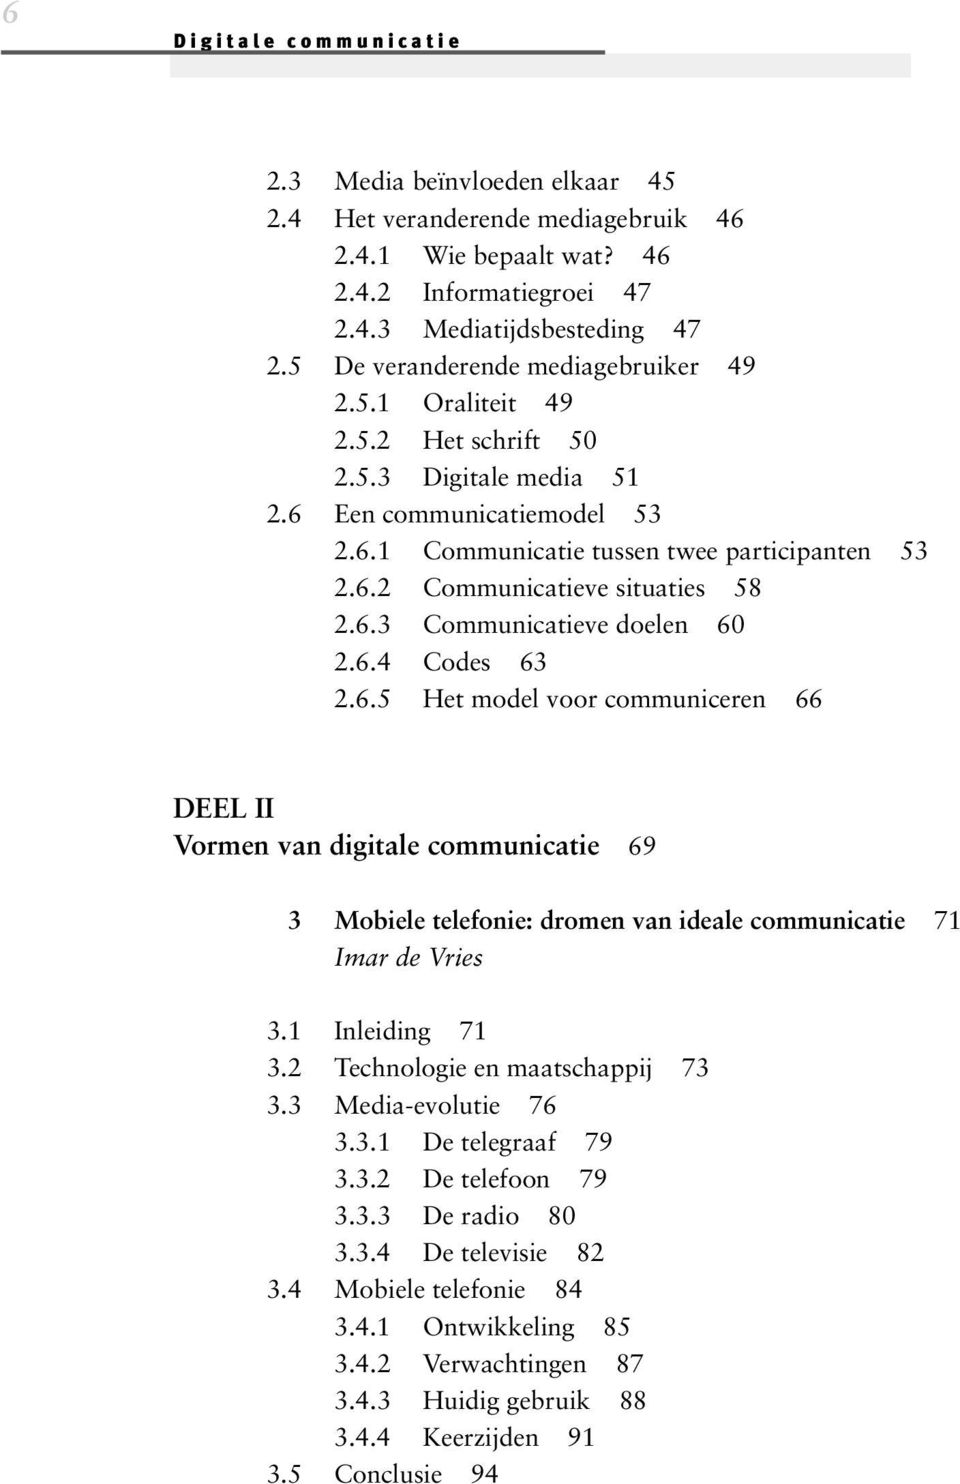 6.3 Communicatieve doelen 60 2.6.4 Codes 63 2.6.5 Het model voor communiceren 66 DEEL II Vormen van digitale communicatie 69 3 Mobiele telefonie: dromen van ideale communicatie 71 Imar de Vries 3.